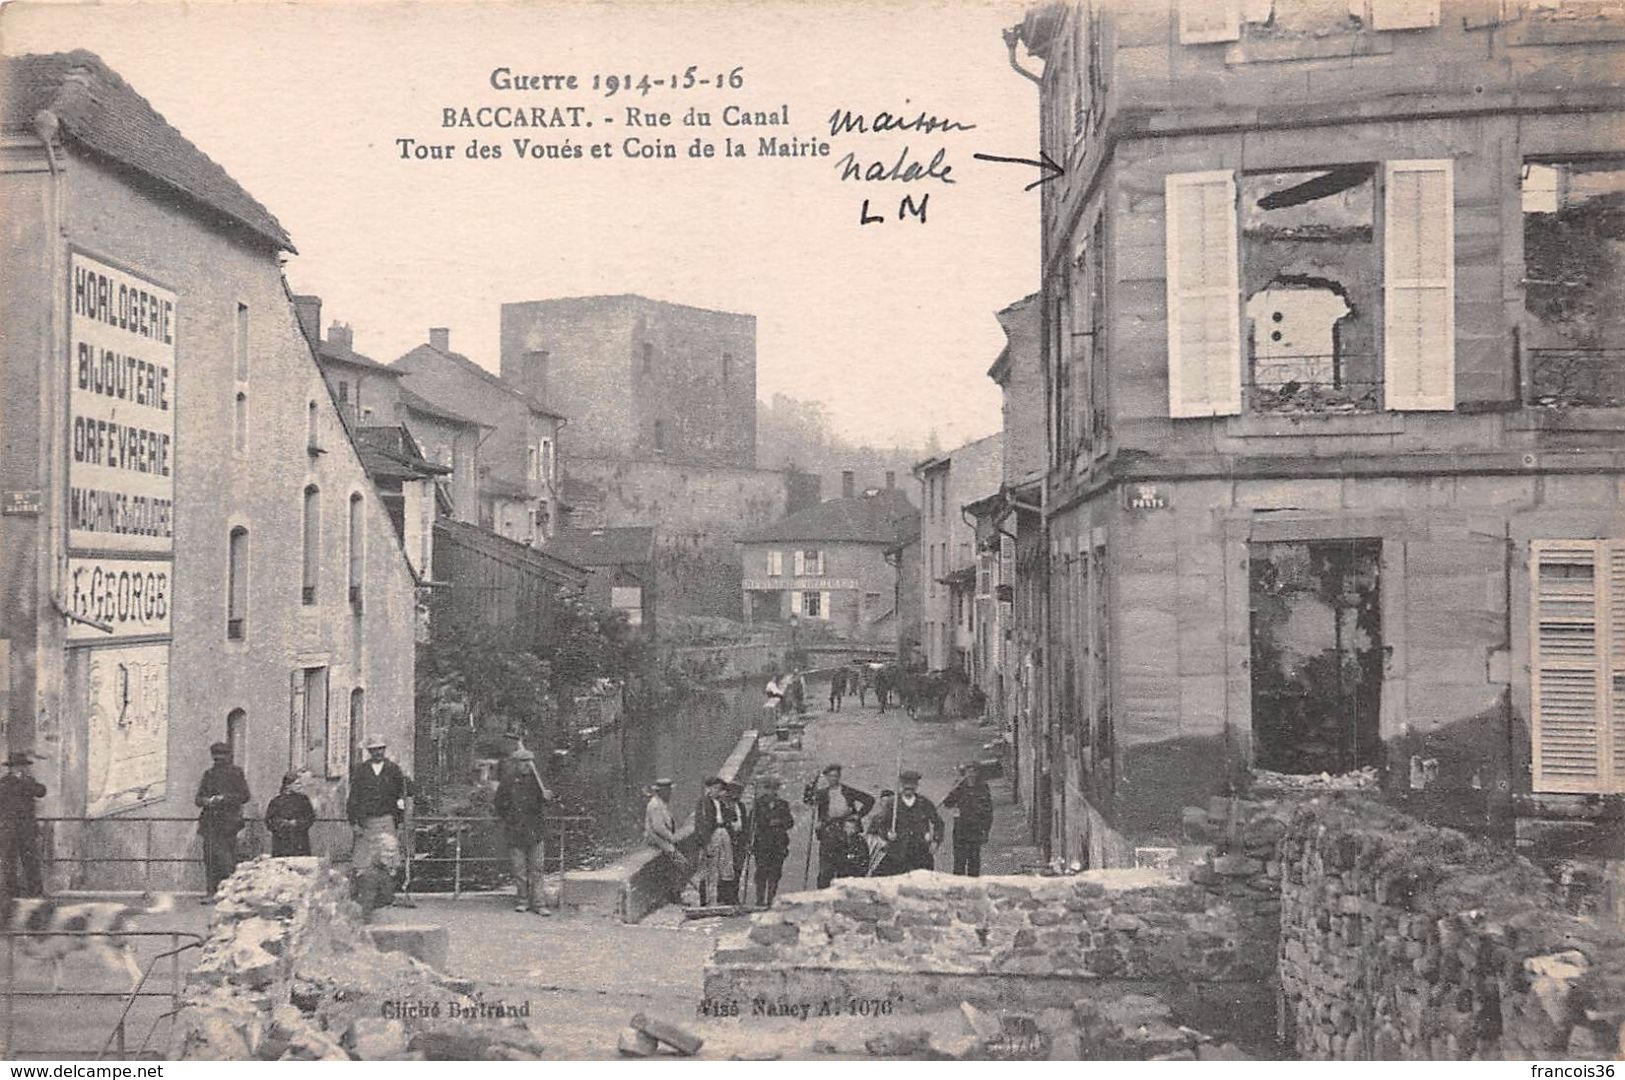 Lot de 45 CPA de Baccarat (54) - Ruines - pendant la guerre 1914 1918 en Lorraine - bon état